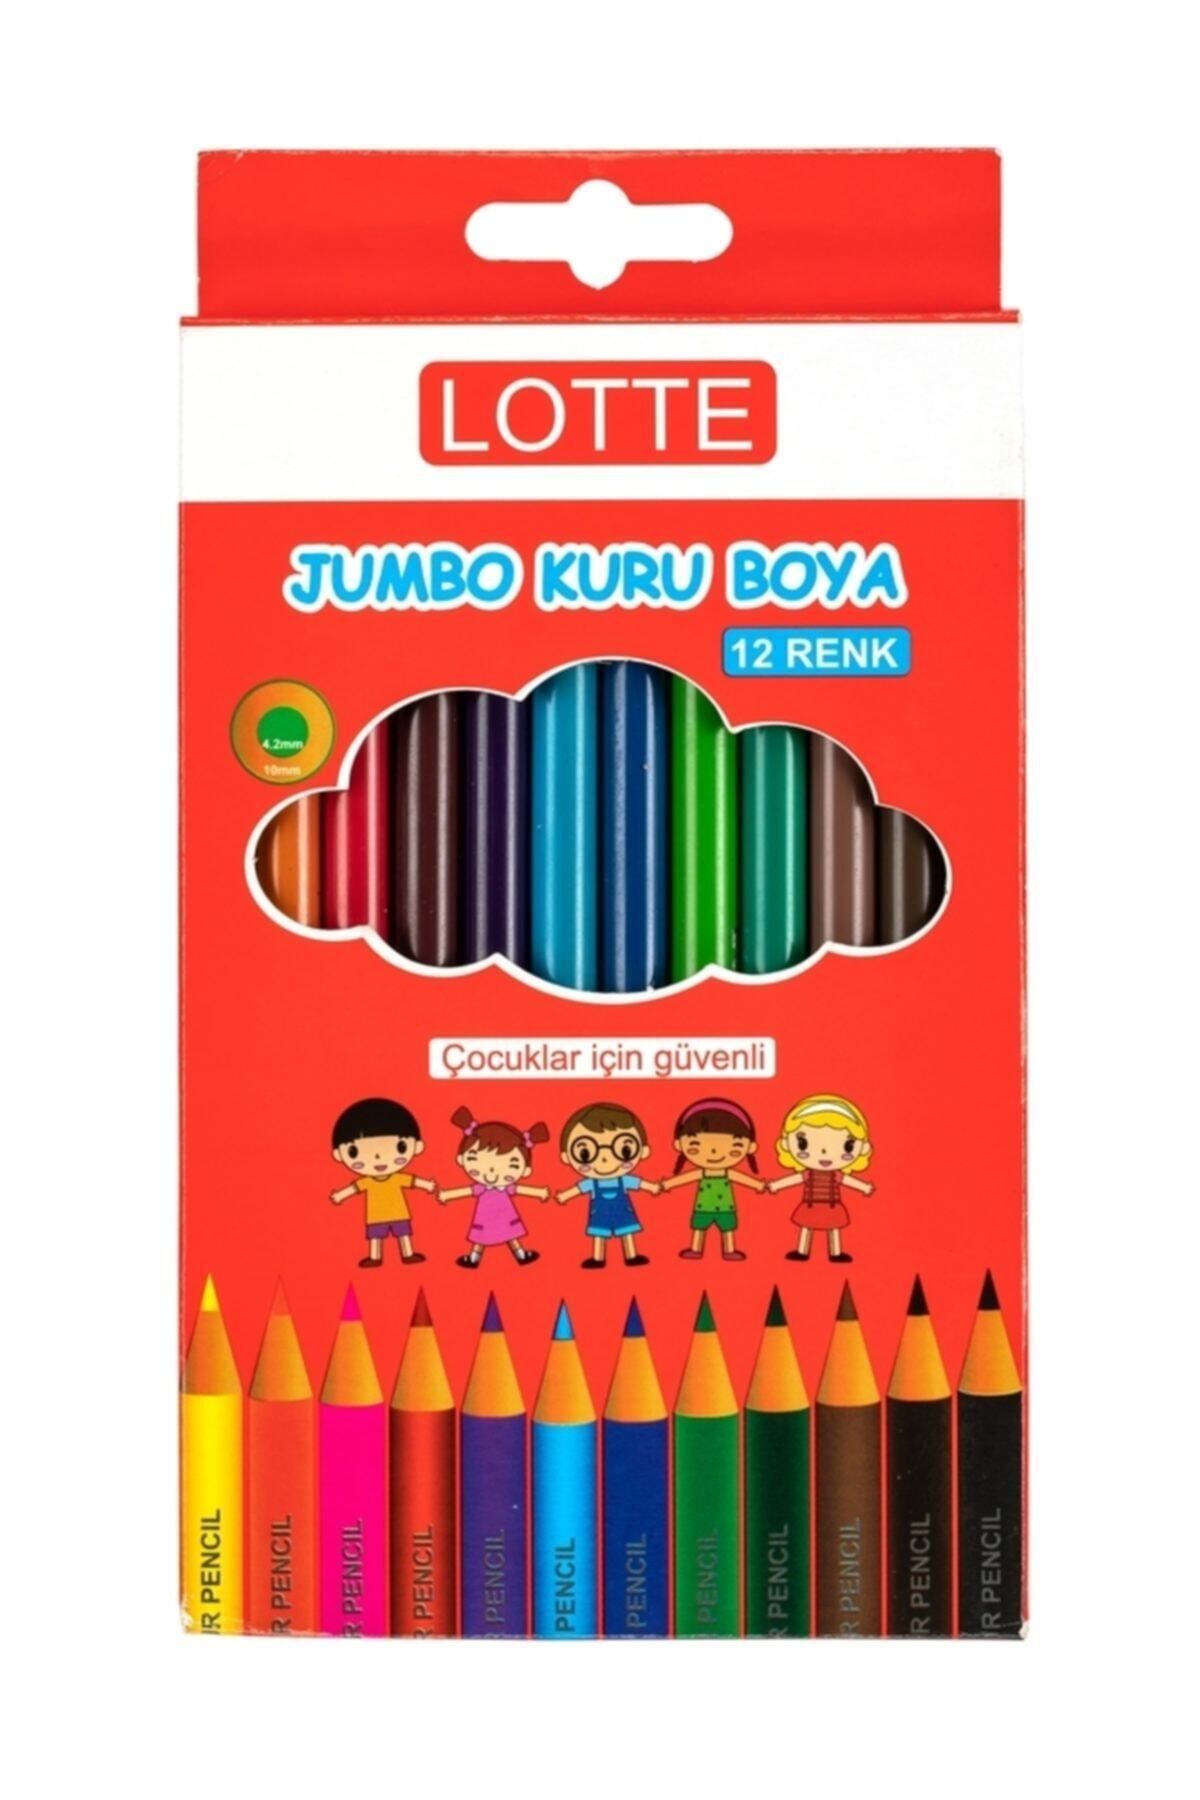 Bigpoint Lotte Jumbo Üçgen Kuru Boya Kalemi 12 Renk 6'lı Şirink